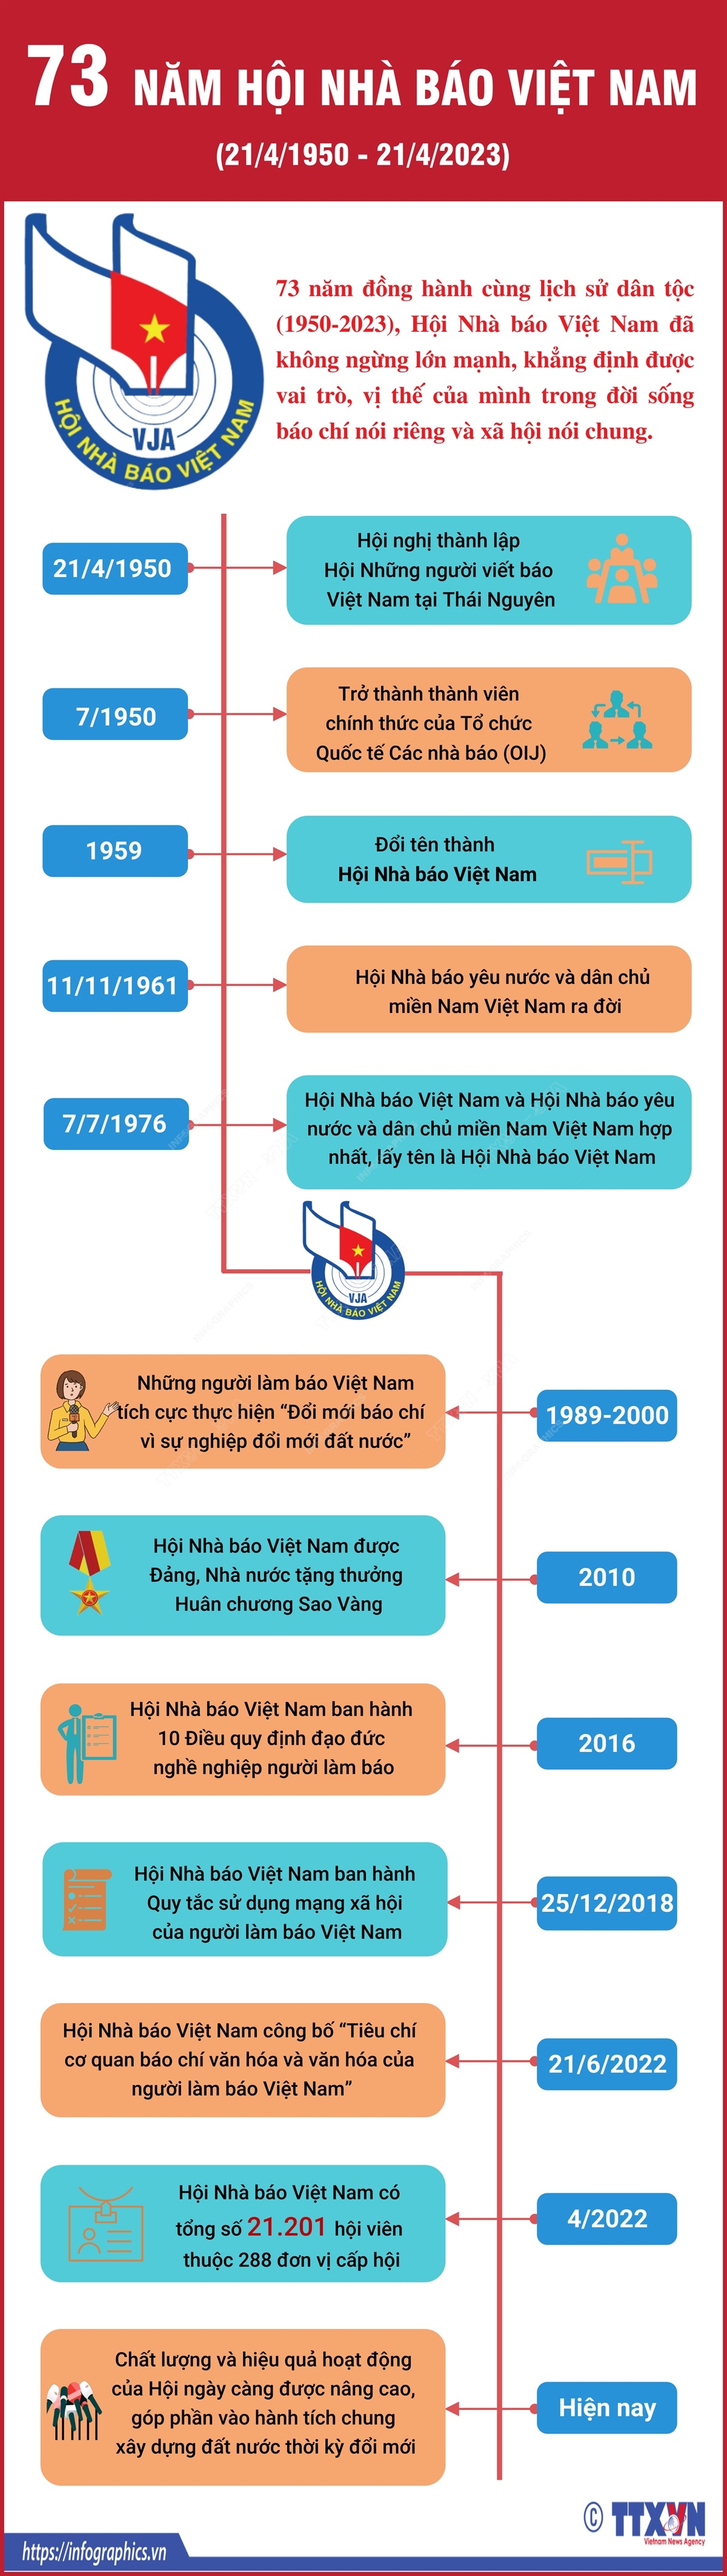 73 năm Hội Nhà báo Việt Nam  Những dấu mốc quan trọng